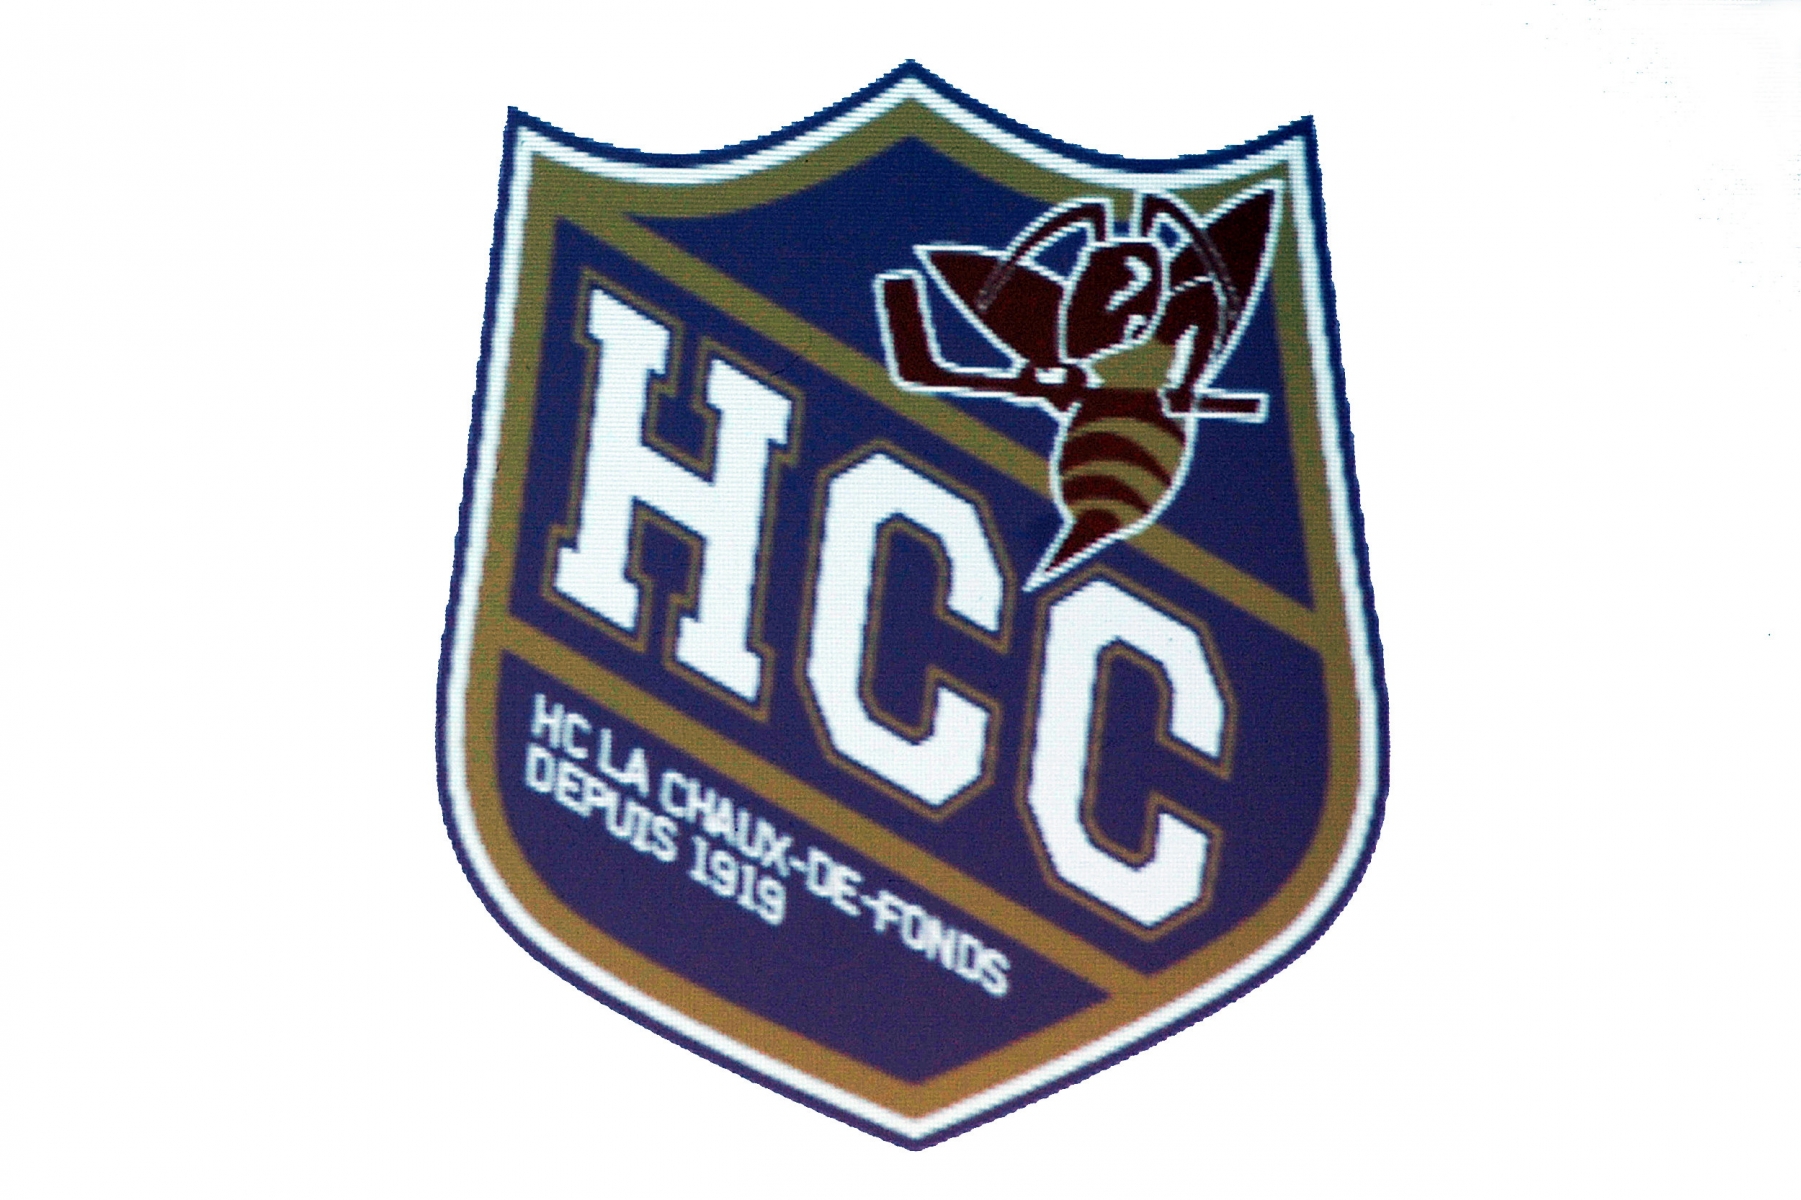 Nouveau logo du HCC    LA CHAUX-DE-FONDS 11 JUIN 2009  PHOTO: CHRISTIAN GALLEY